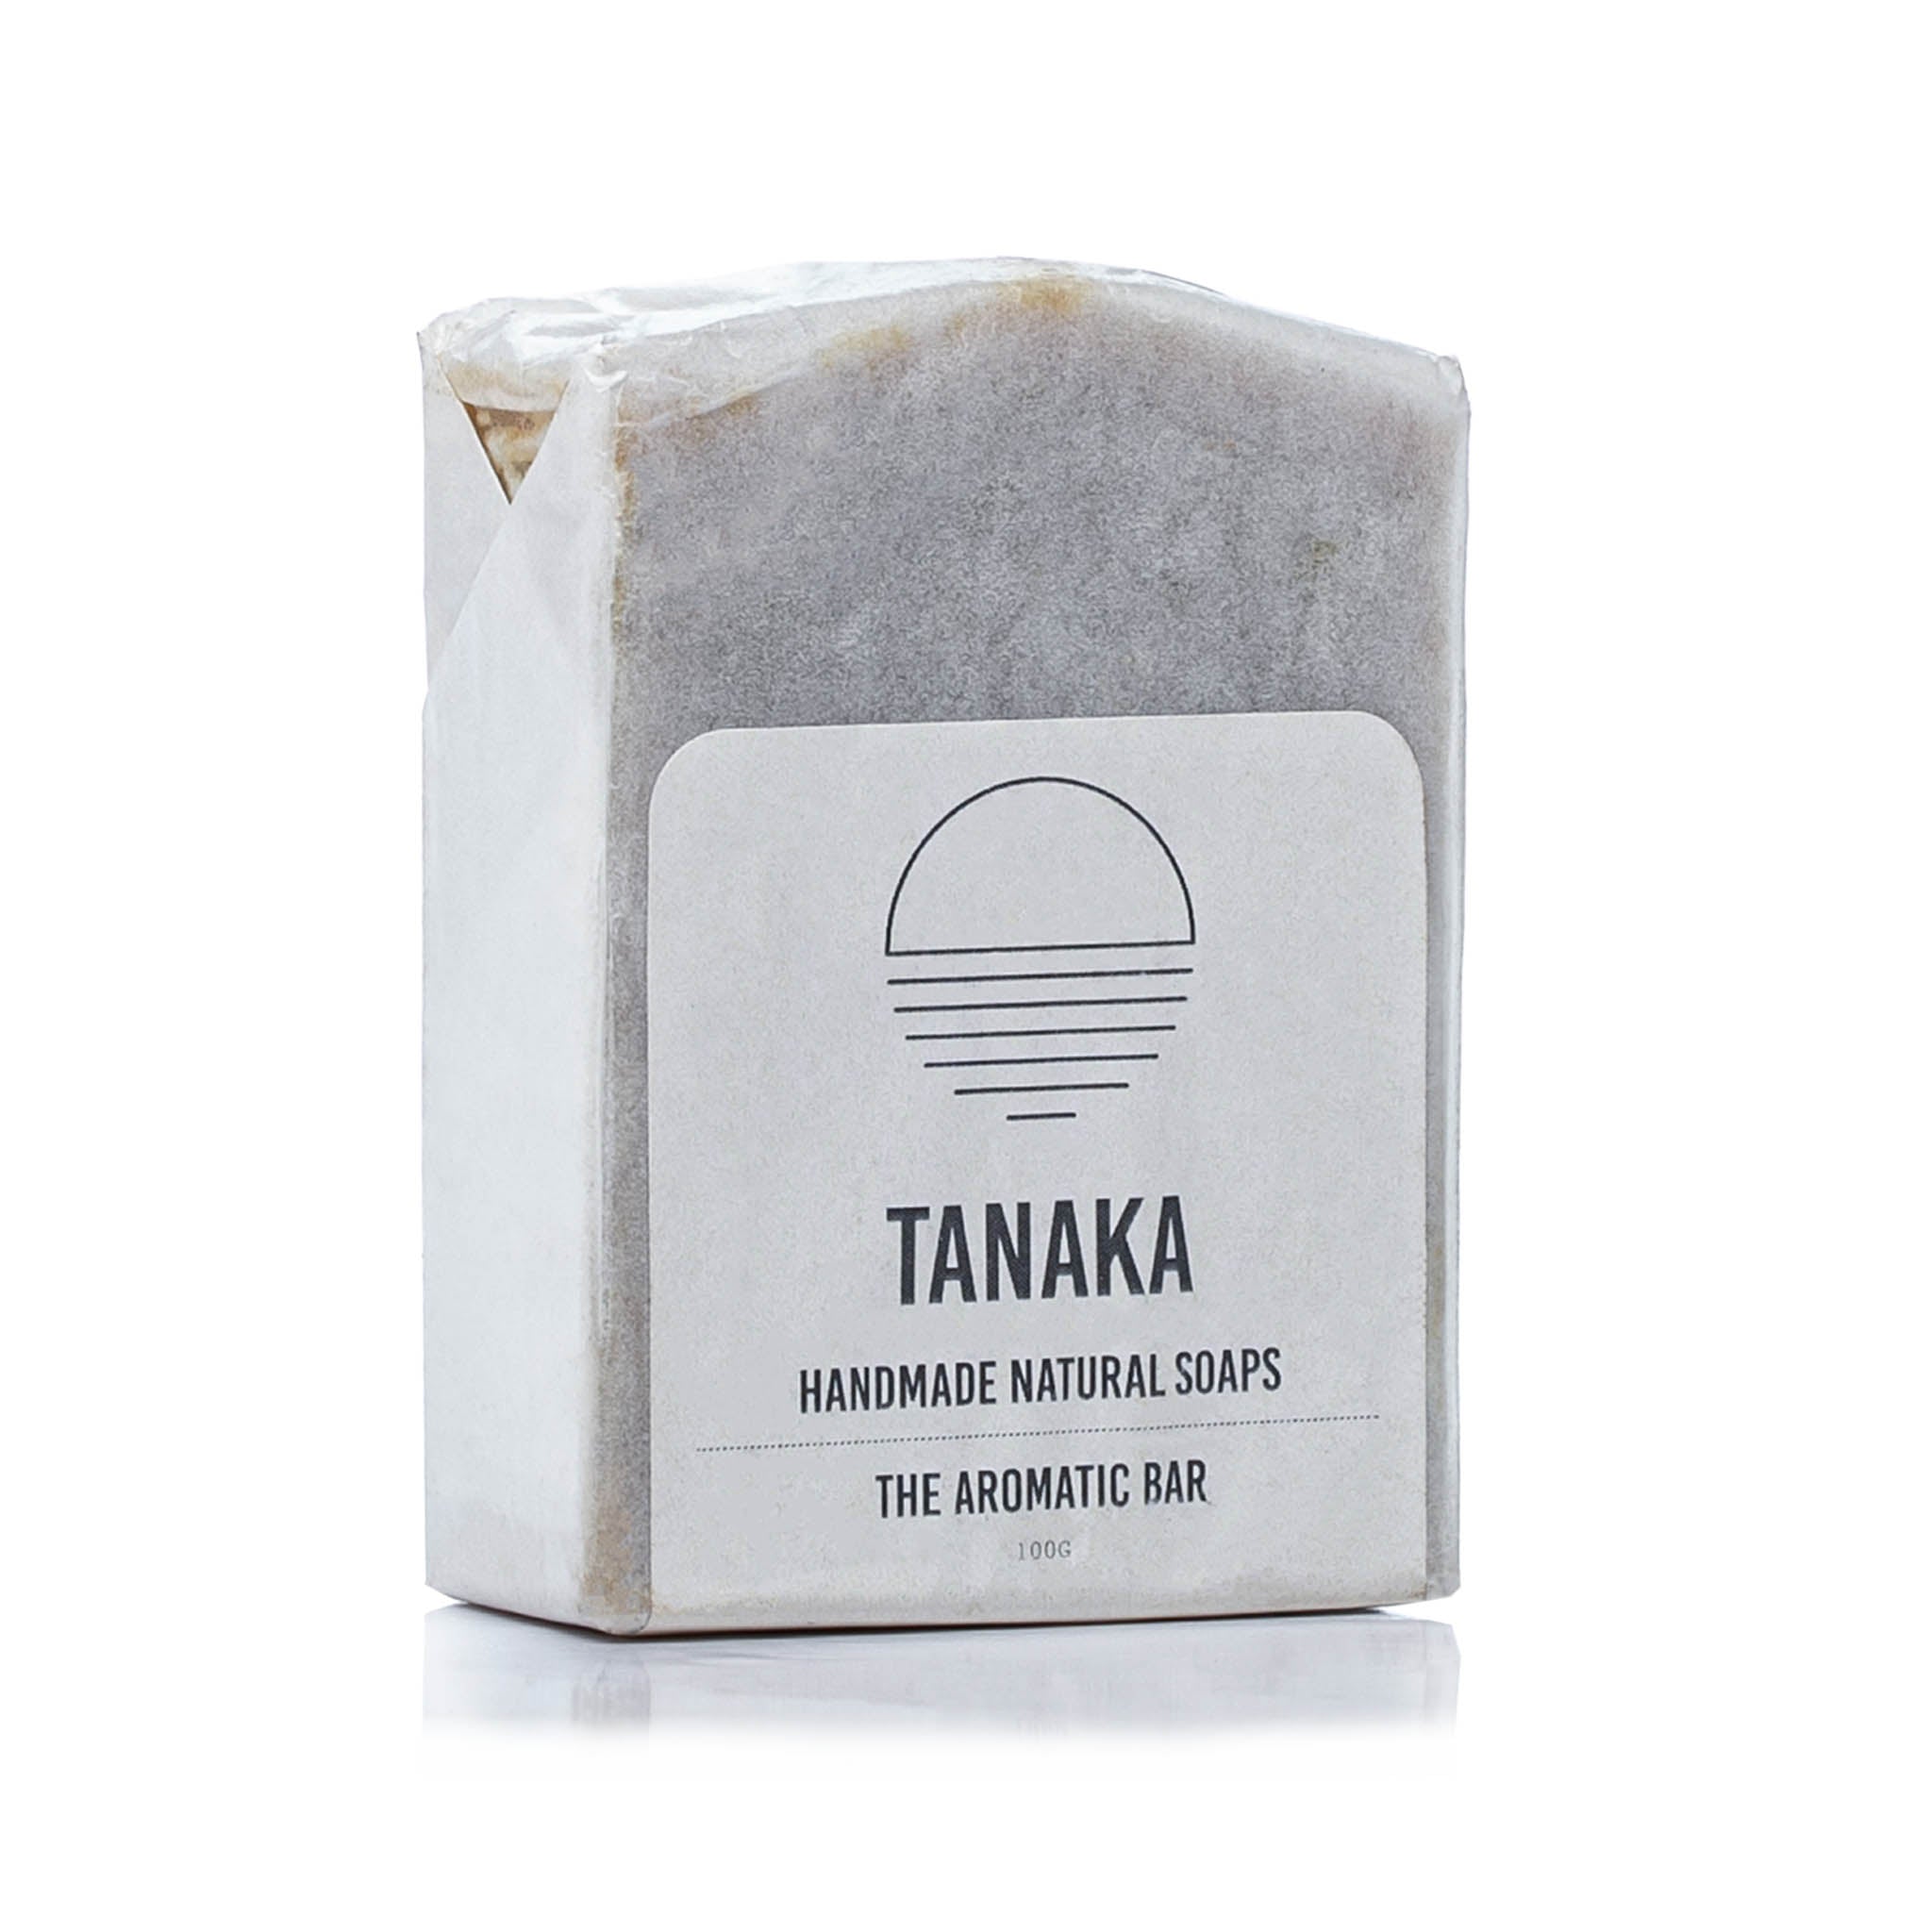 Tanaka Aromatic bar soap at Bracketts Beauty